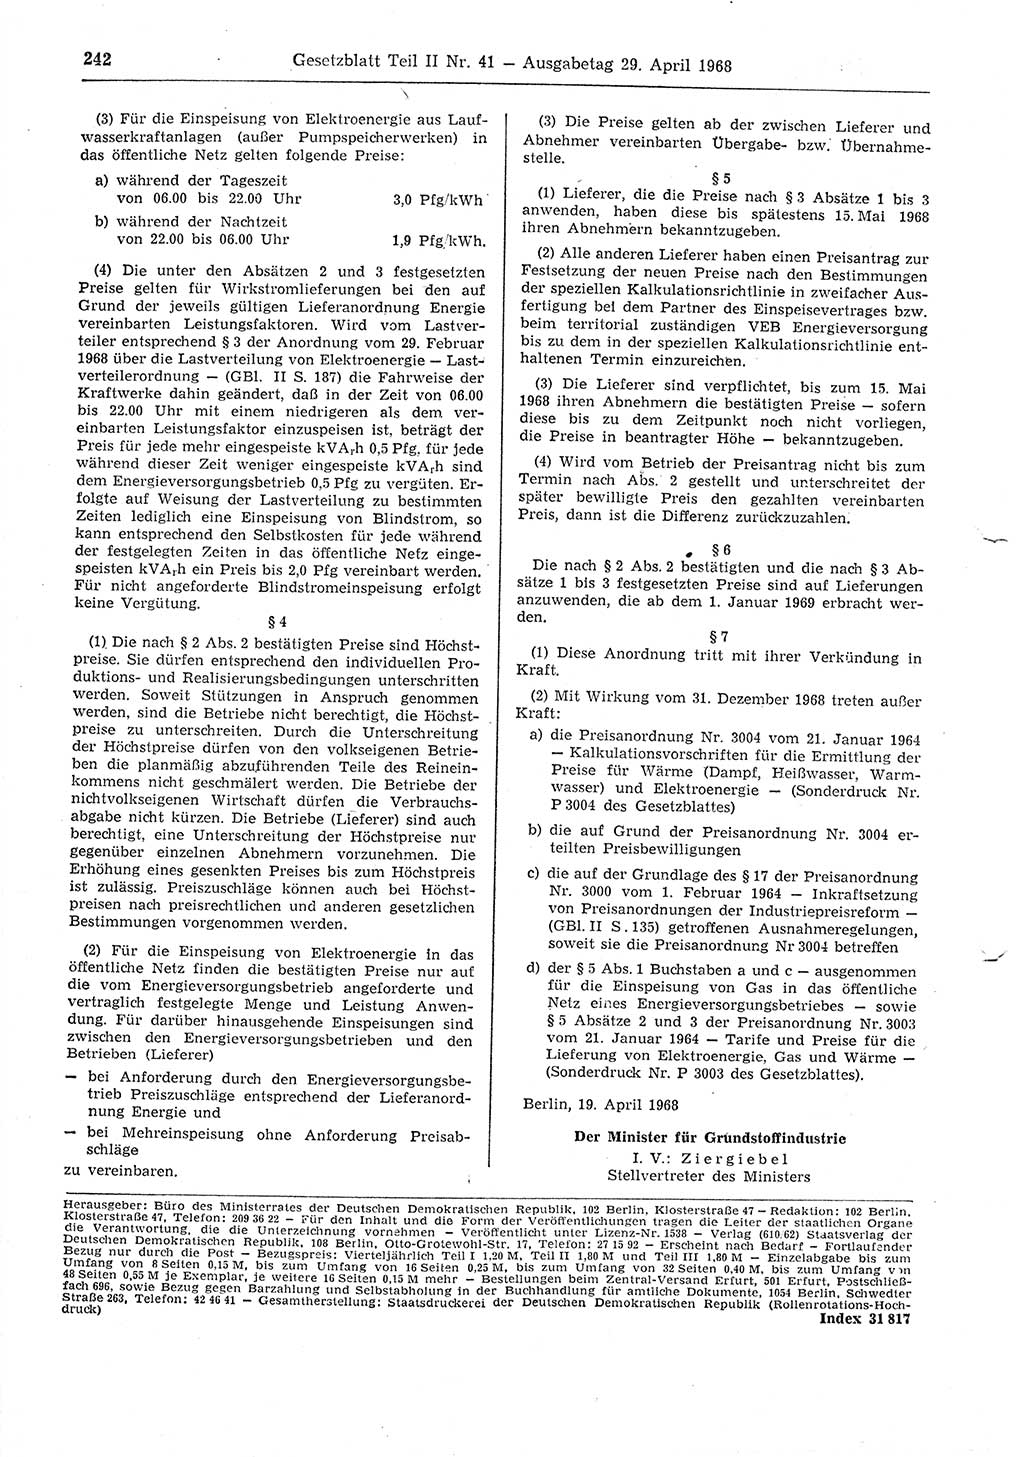 Gesetzblatt (GBl.) der Deutschen Demokratischen Republik (DDR) Teil ⅠⅠ 1968, Seite 242 (GBl. DDR ⅠⅠ 1968, S. 242)